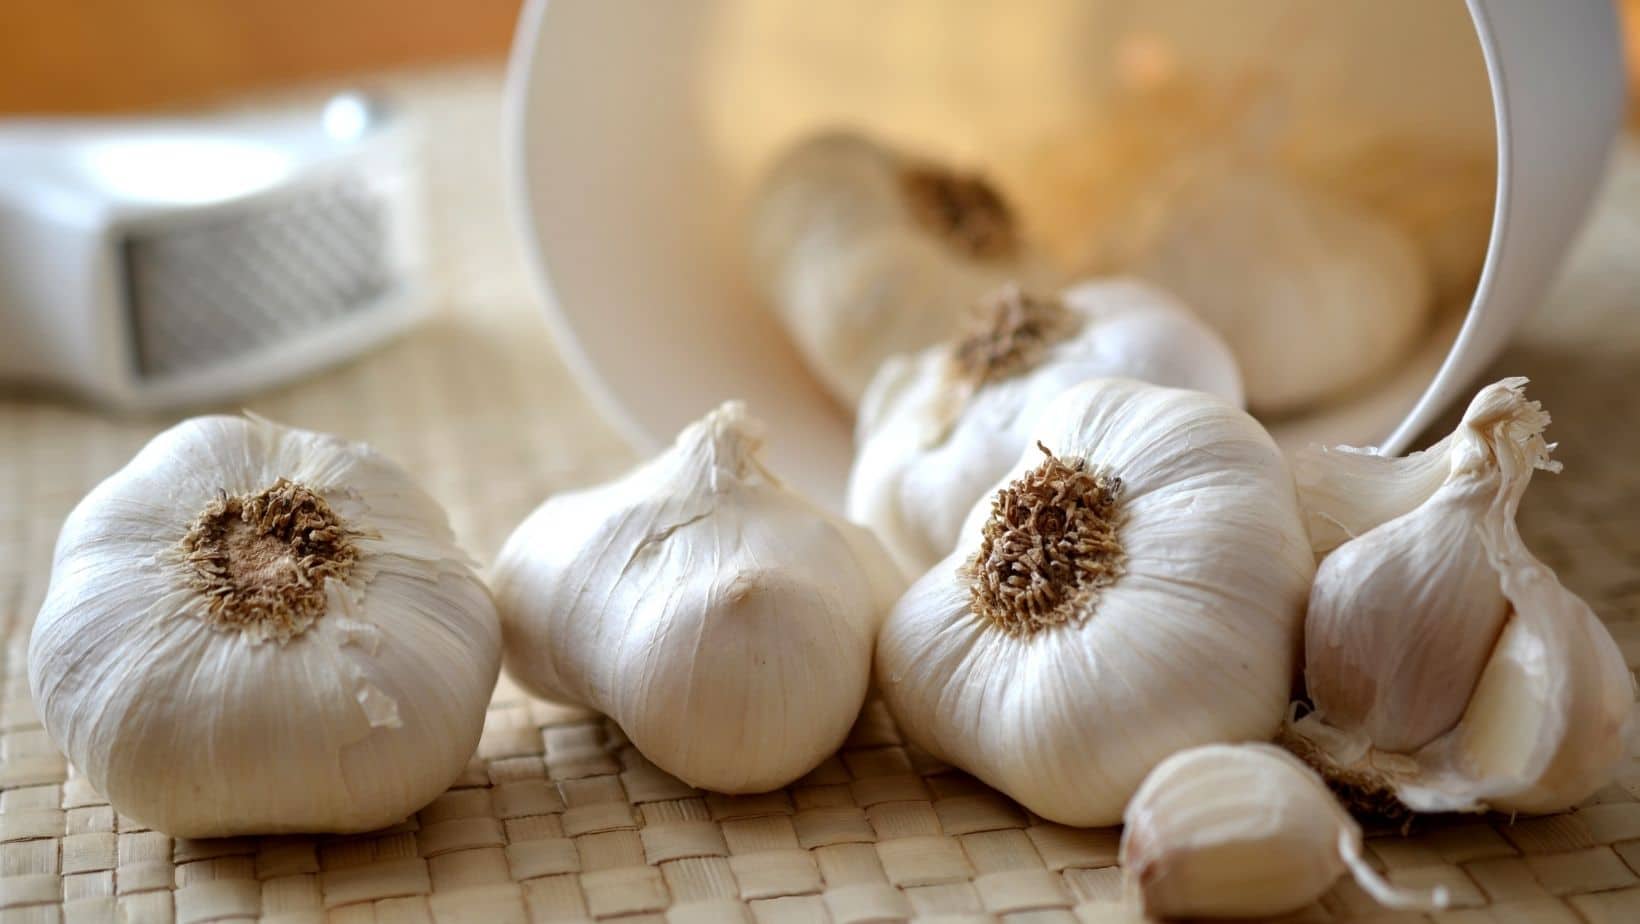 Garlic benefits